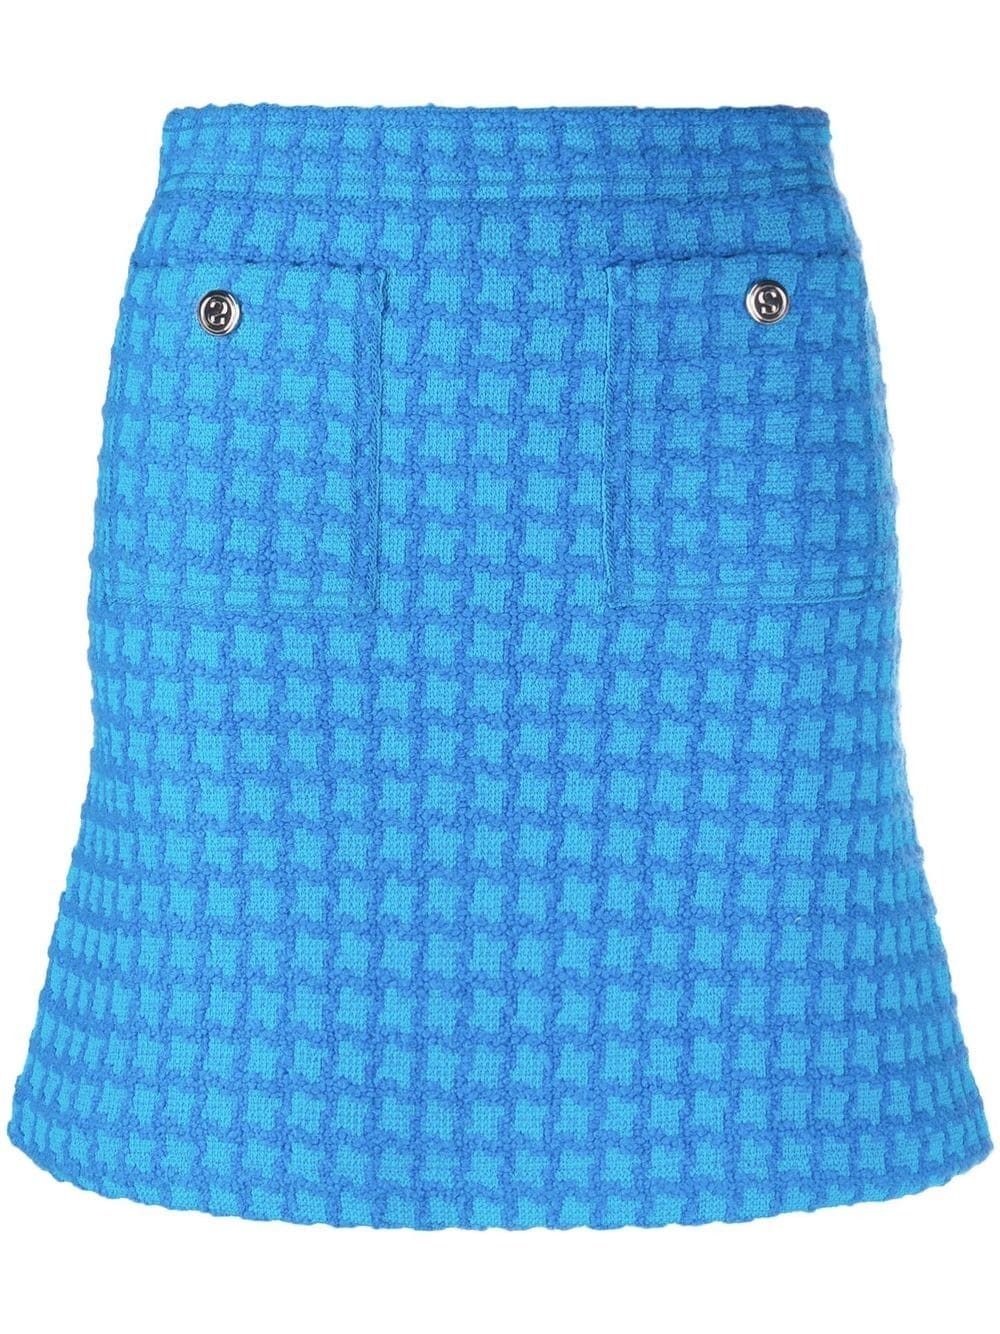 SANDRO houndstooth mini skirt - Blue